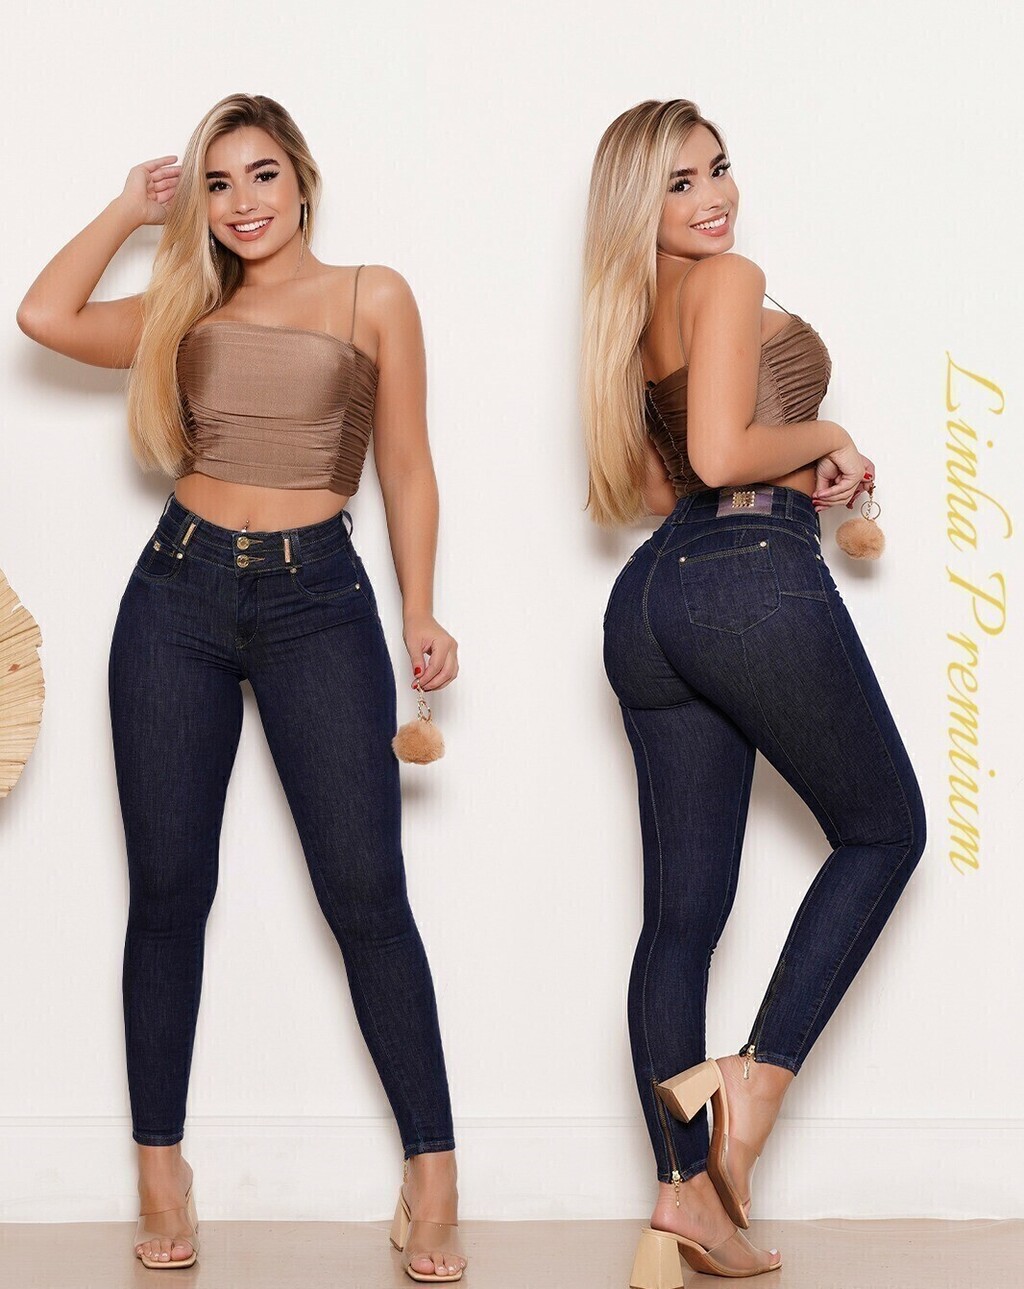 Calça jeans Ri19 - Coleção premium cód. 75575